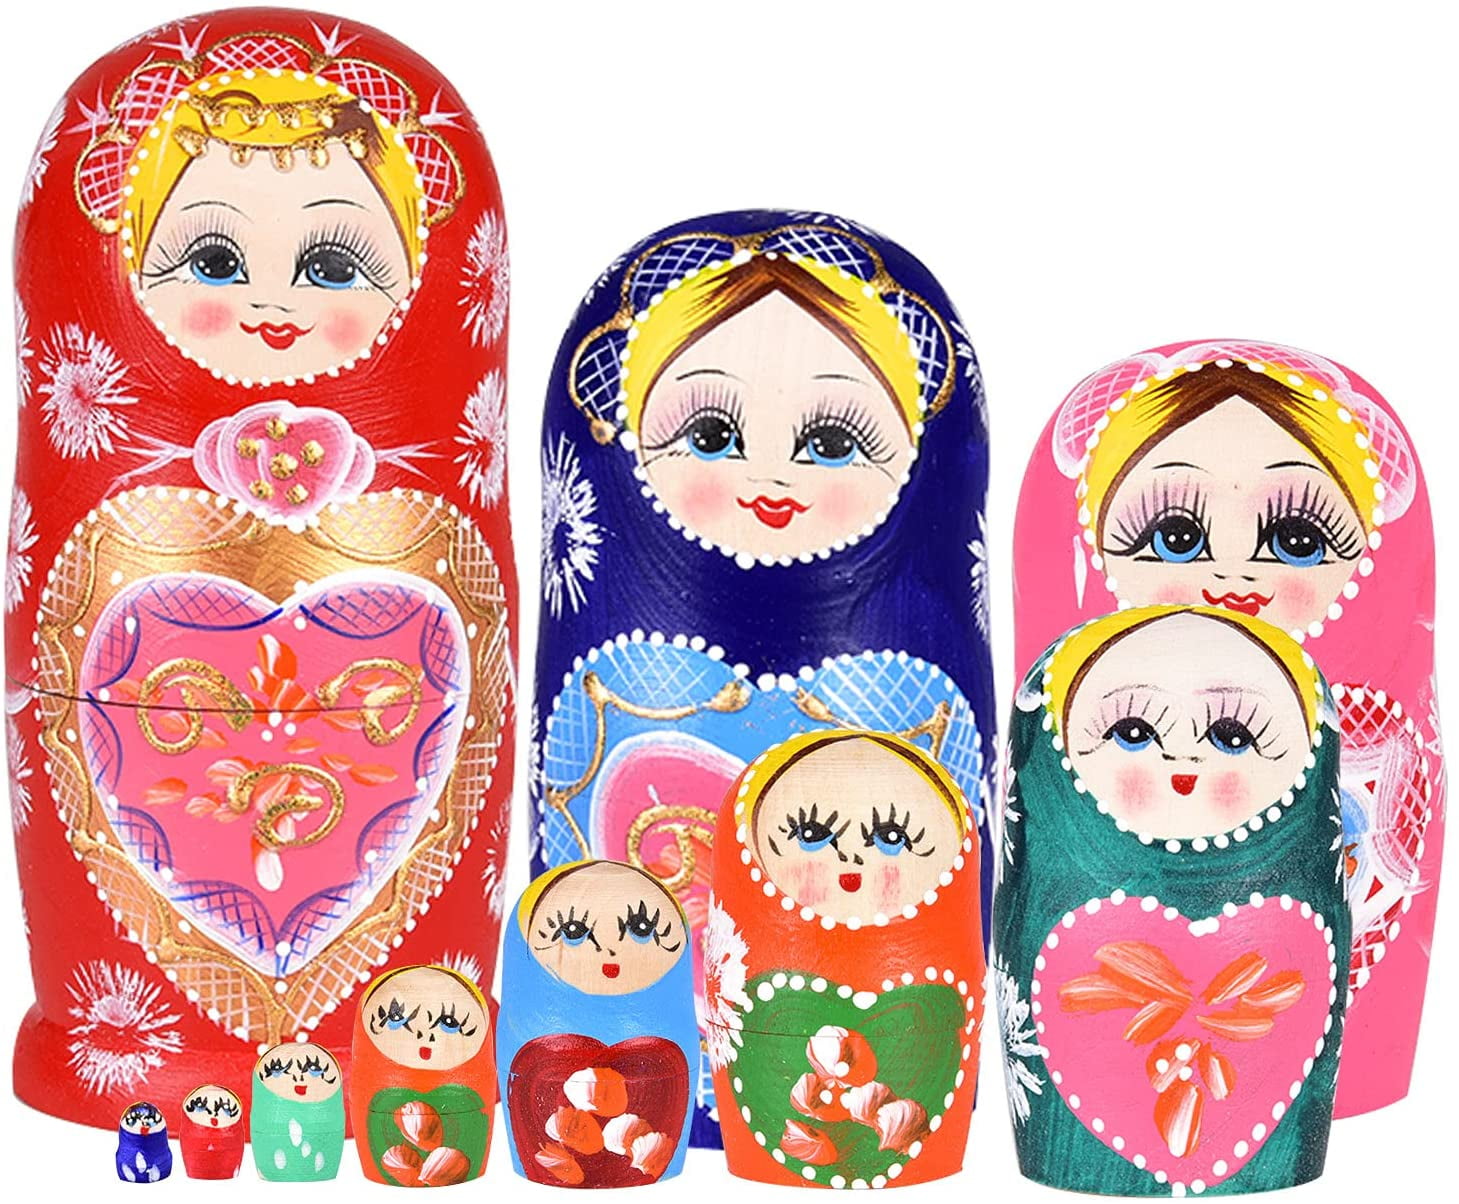 Russian Nesting Dolls Matryoshka 10pcs Matryoshka dolls Russian dolls